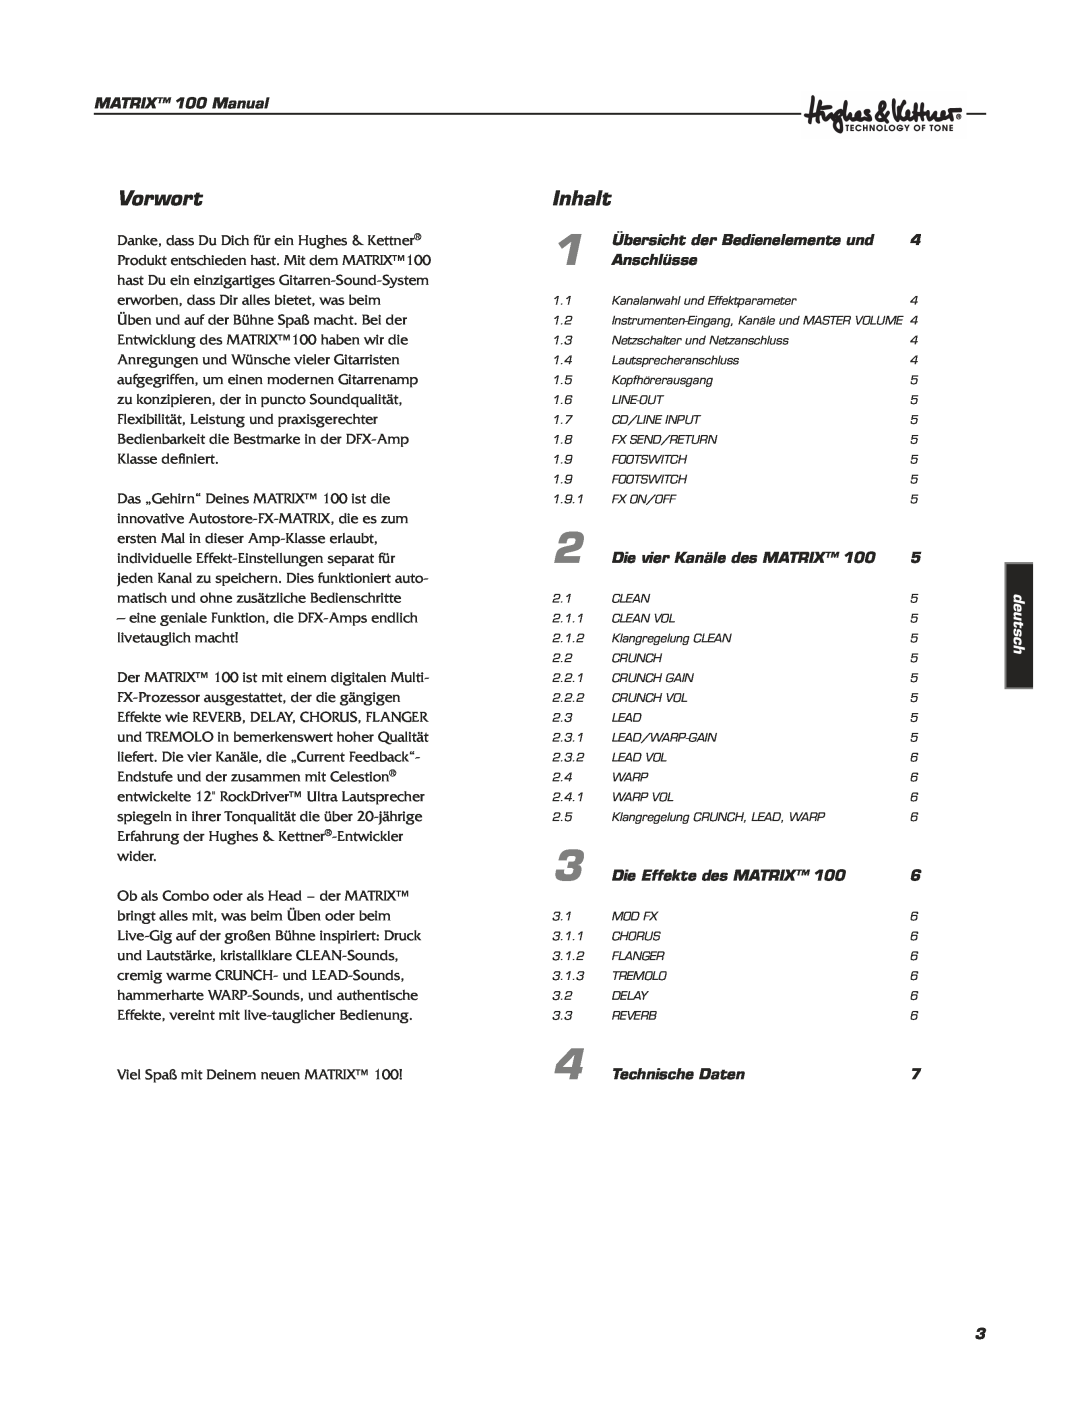 Hughes & Kettner Matrix 100 manual Vorwort, Inhalt, deutsch 